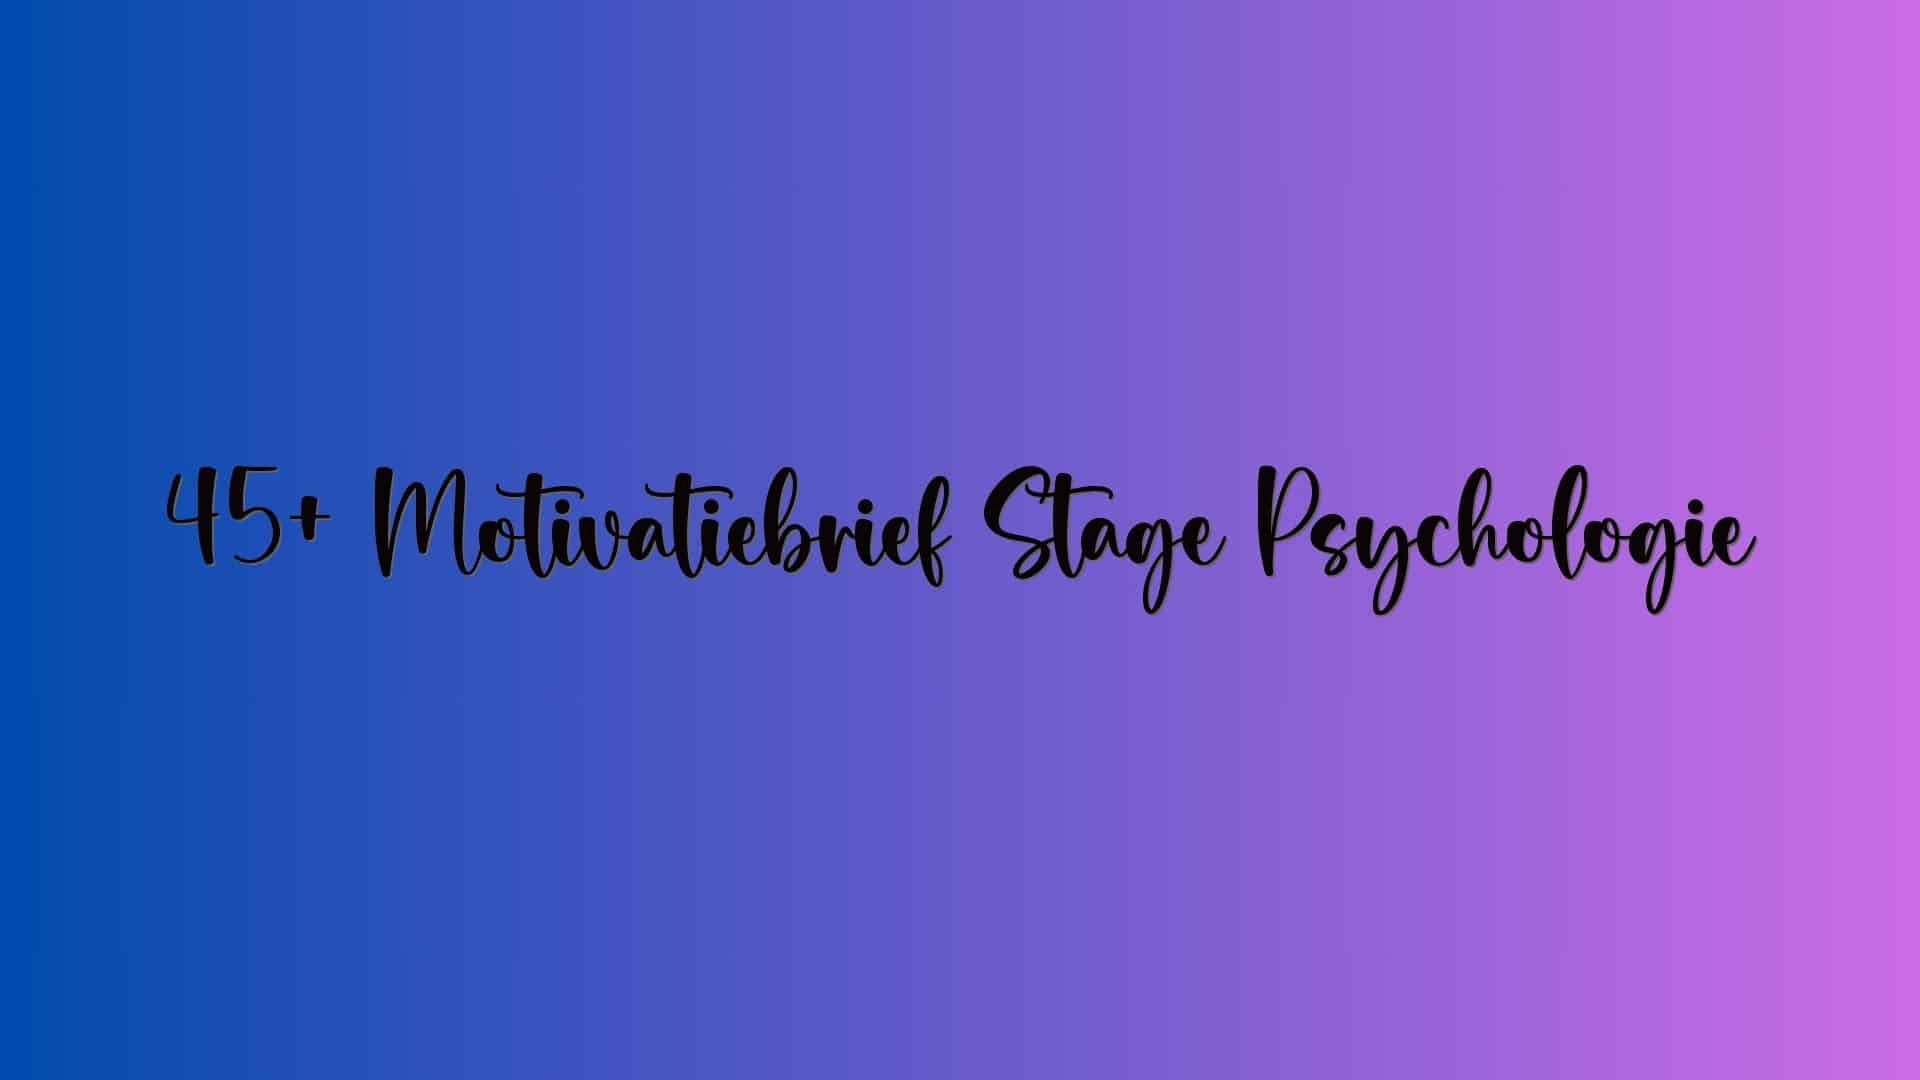 45+ Motivatiebrief Stage Psychologie